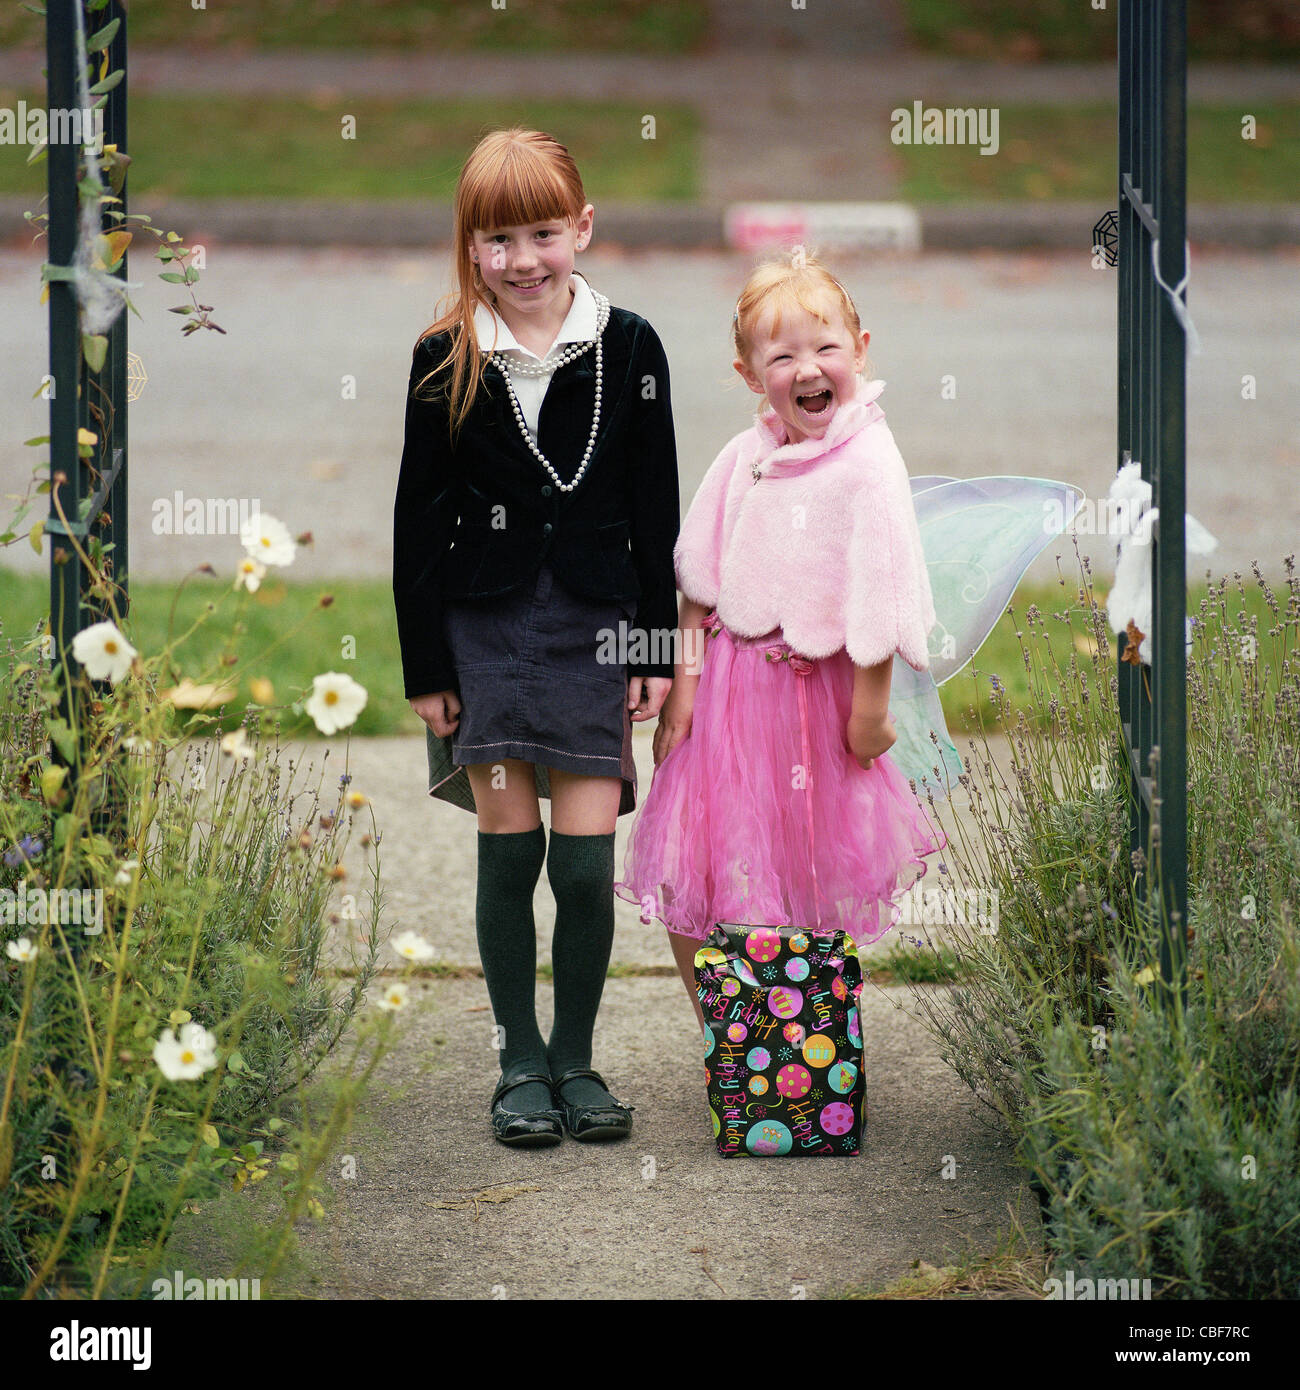 Deux enfants jouant à l'extérieur - fille soeurs jouer à s'habiller et posant dans le jardin Banque D'Images